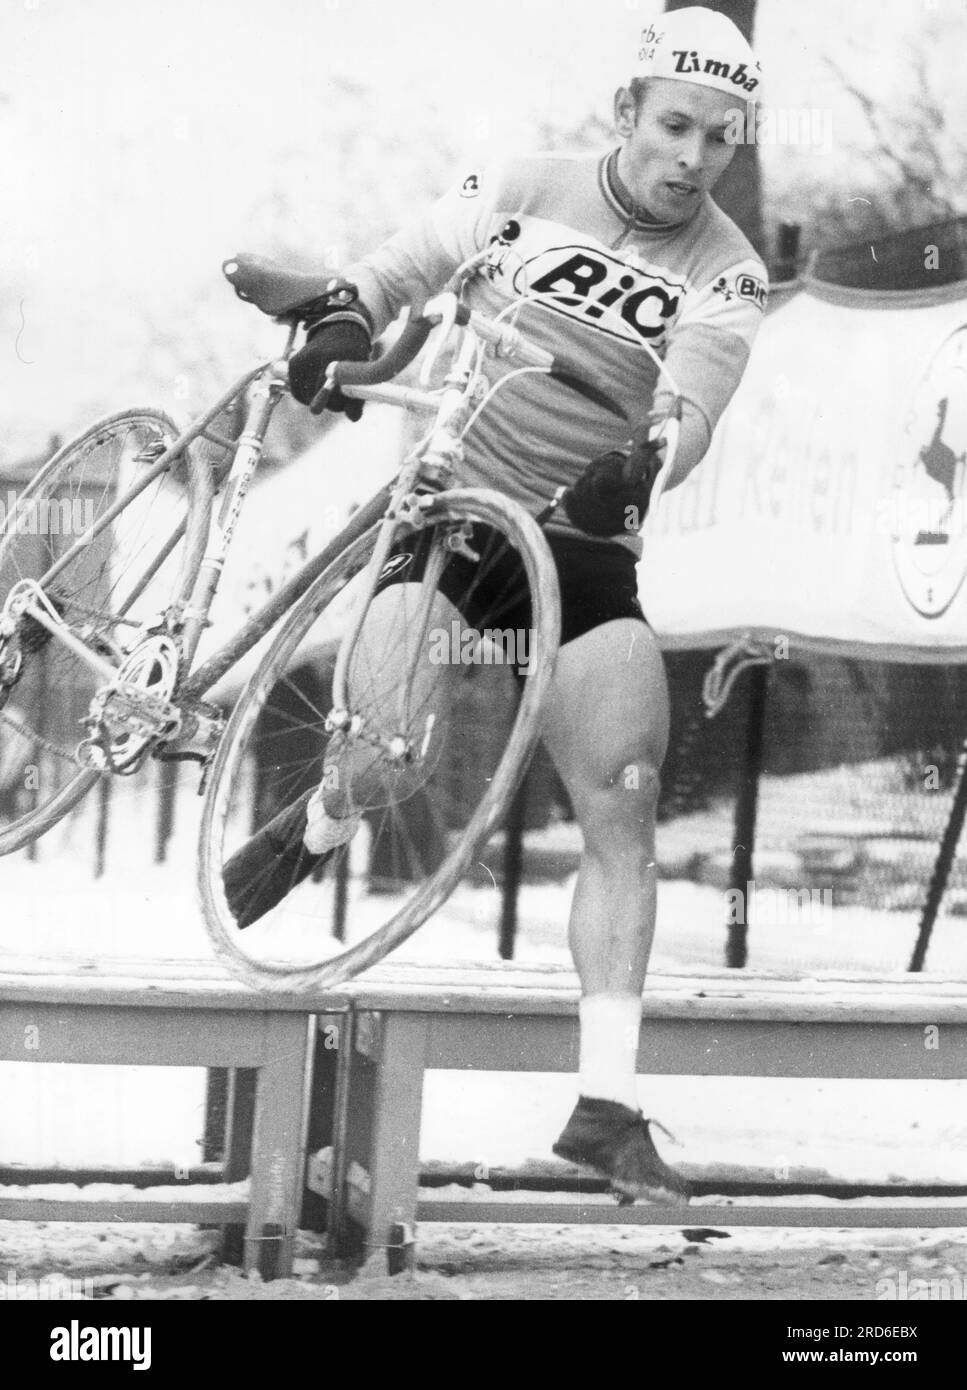 Wolfshohl, Rolf, * 27.12.1938, athlète allemand (coureur cycliste), lors de la course de cross-country, 1969, INFORMATIONS-AUTORISATION-DROITS-SUPPLÉMENTAIRES-NON-DISPONIBLES Banque D'Images